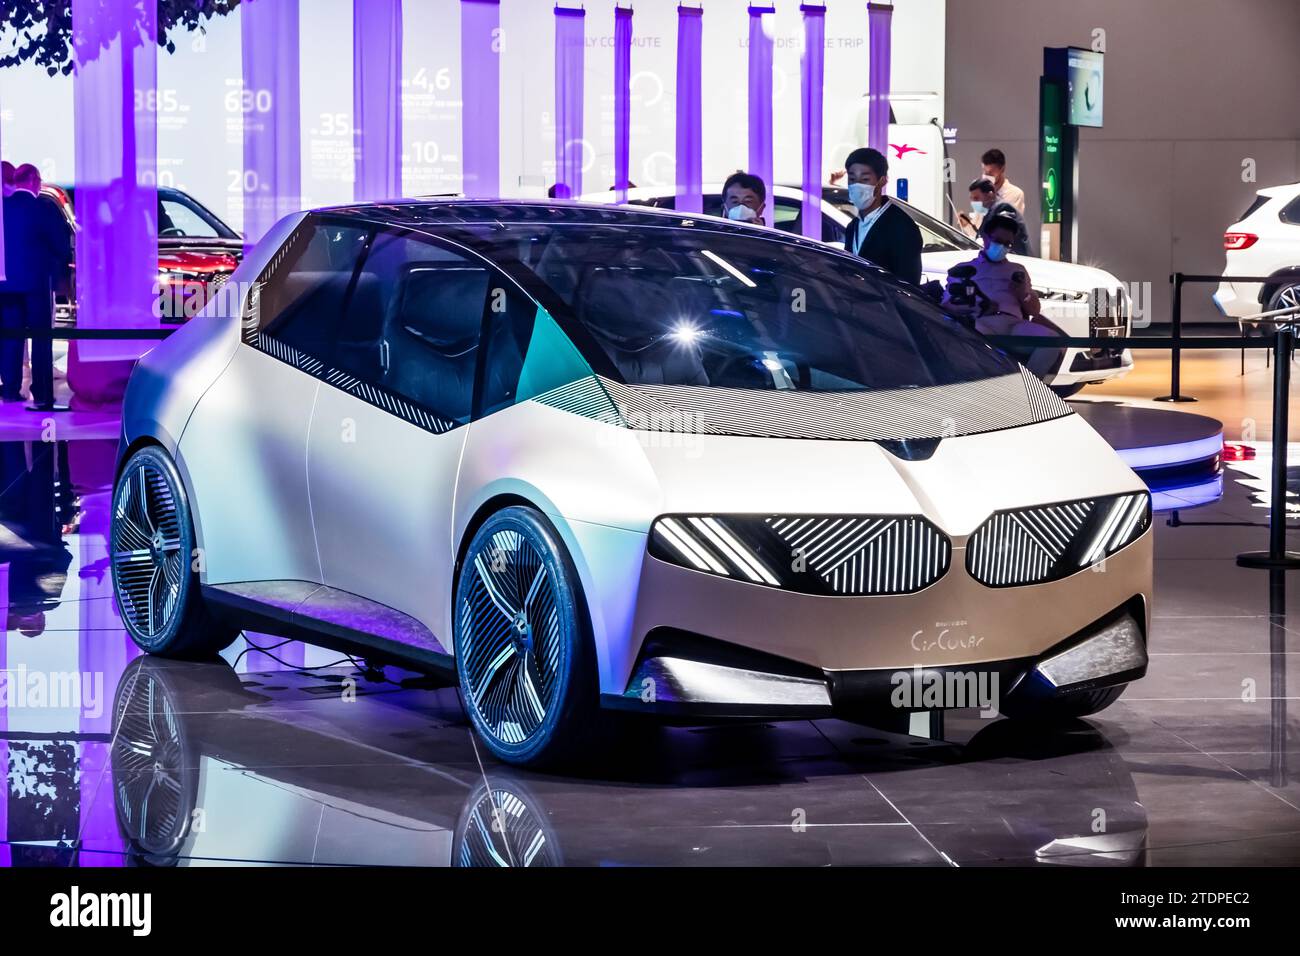 BMW i Vision Circular, ein Elektrofahrzeug aus 100 % recycelten Materialien und an sich ein recycelbares Auto, präsentiert auf der IAA Mobility 2021 Motor sh Stockfoto